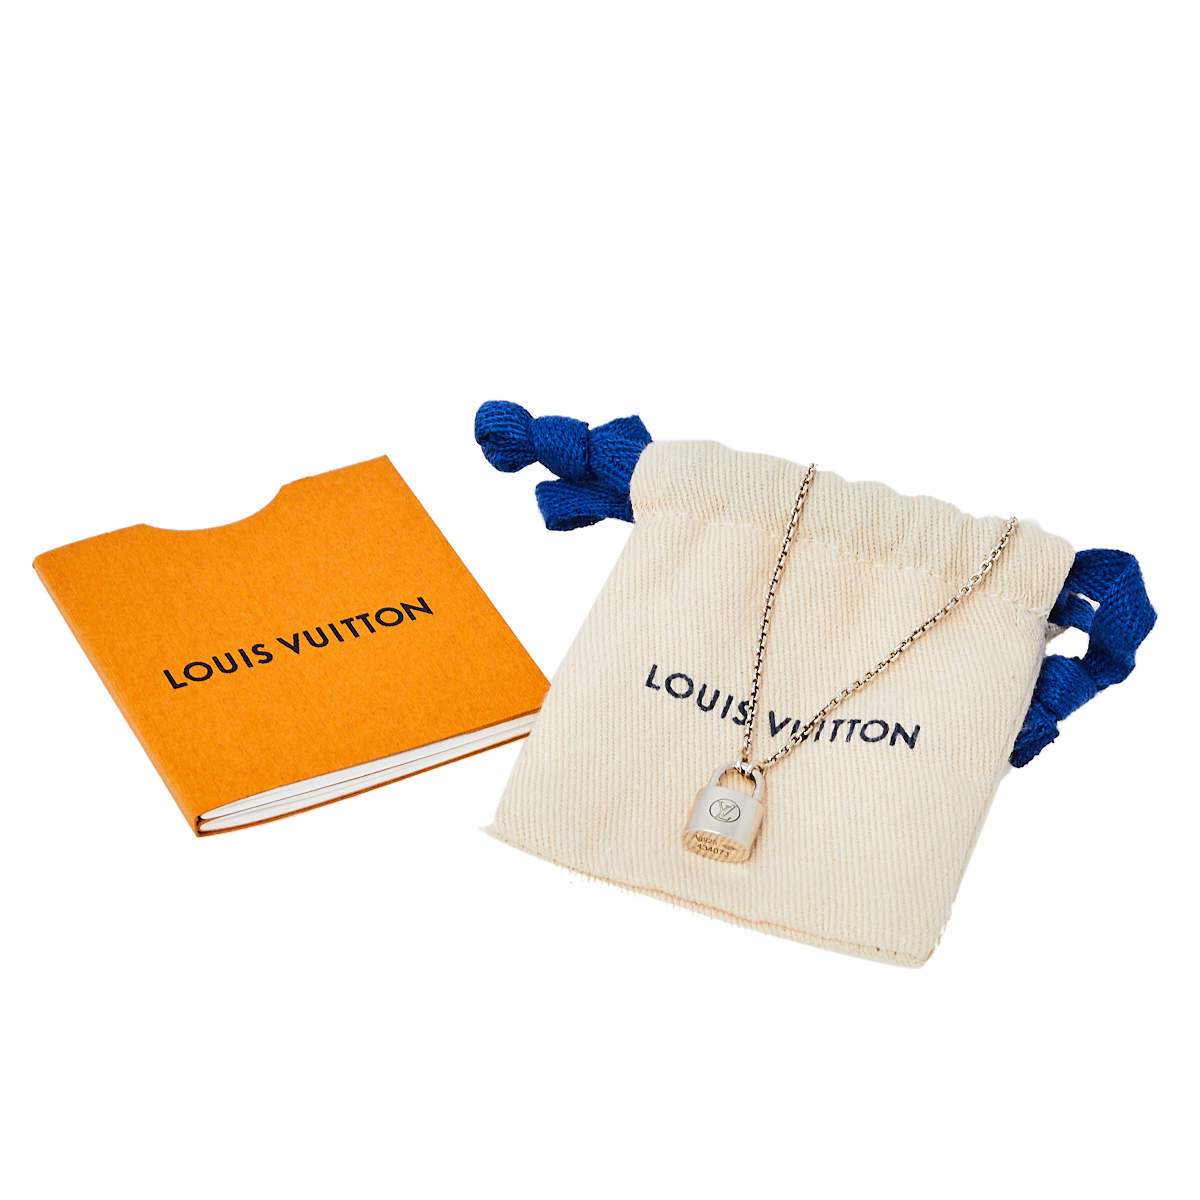 Louis Vuitton Unicef Necklace ราคา